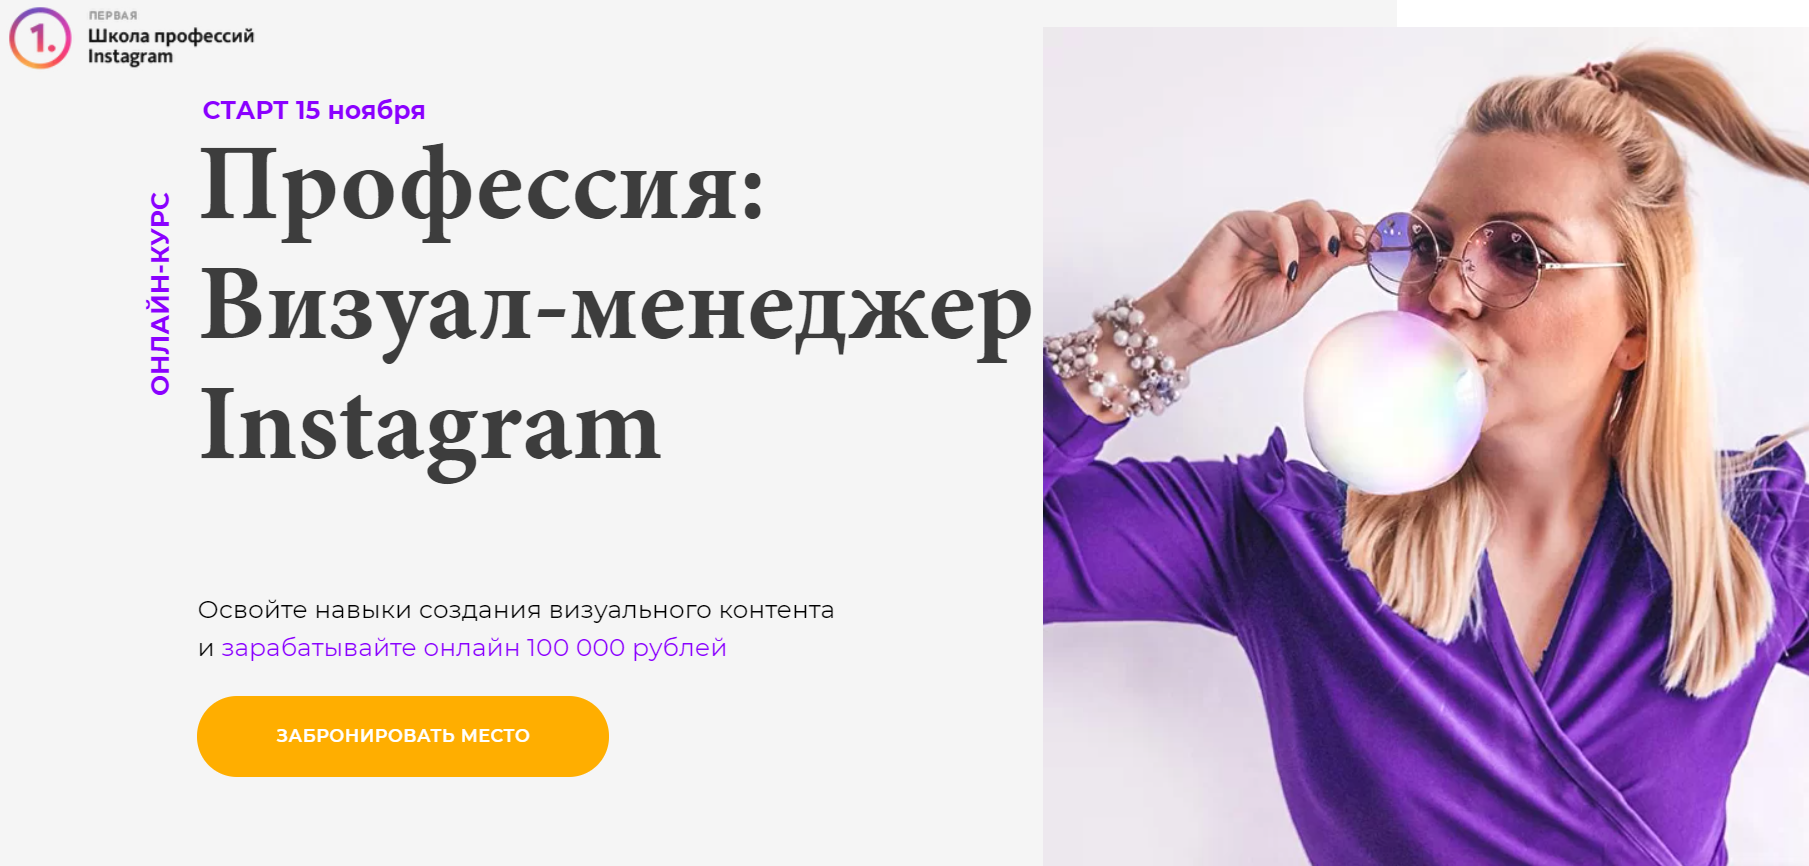 Визуал-менеджер Instagram Светлана Филиппова, Анна Кукушкина